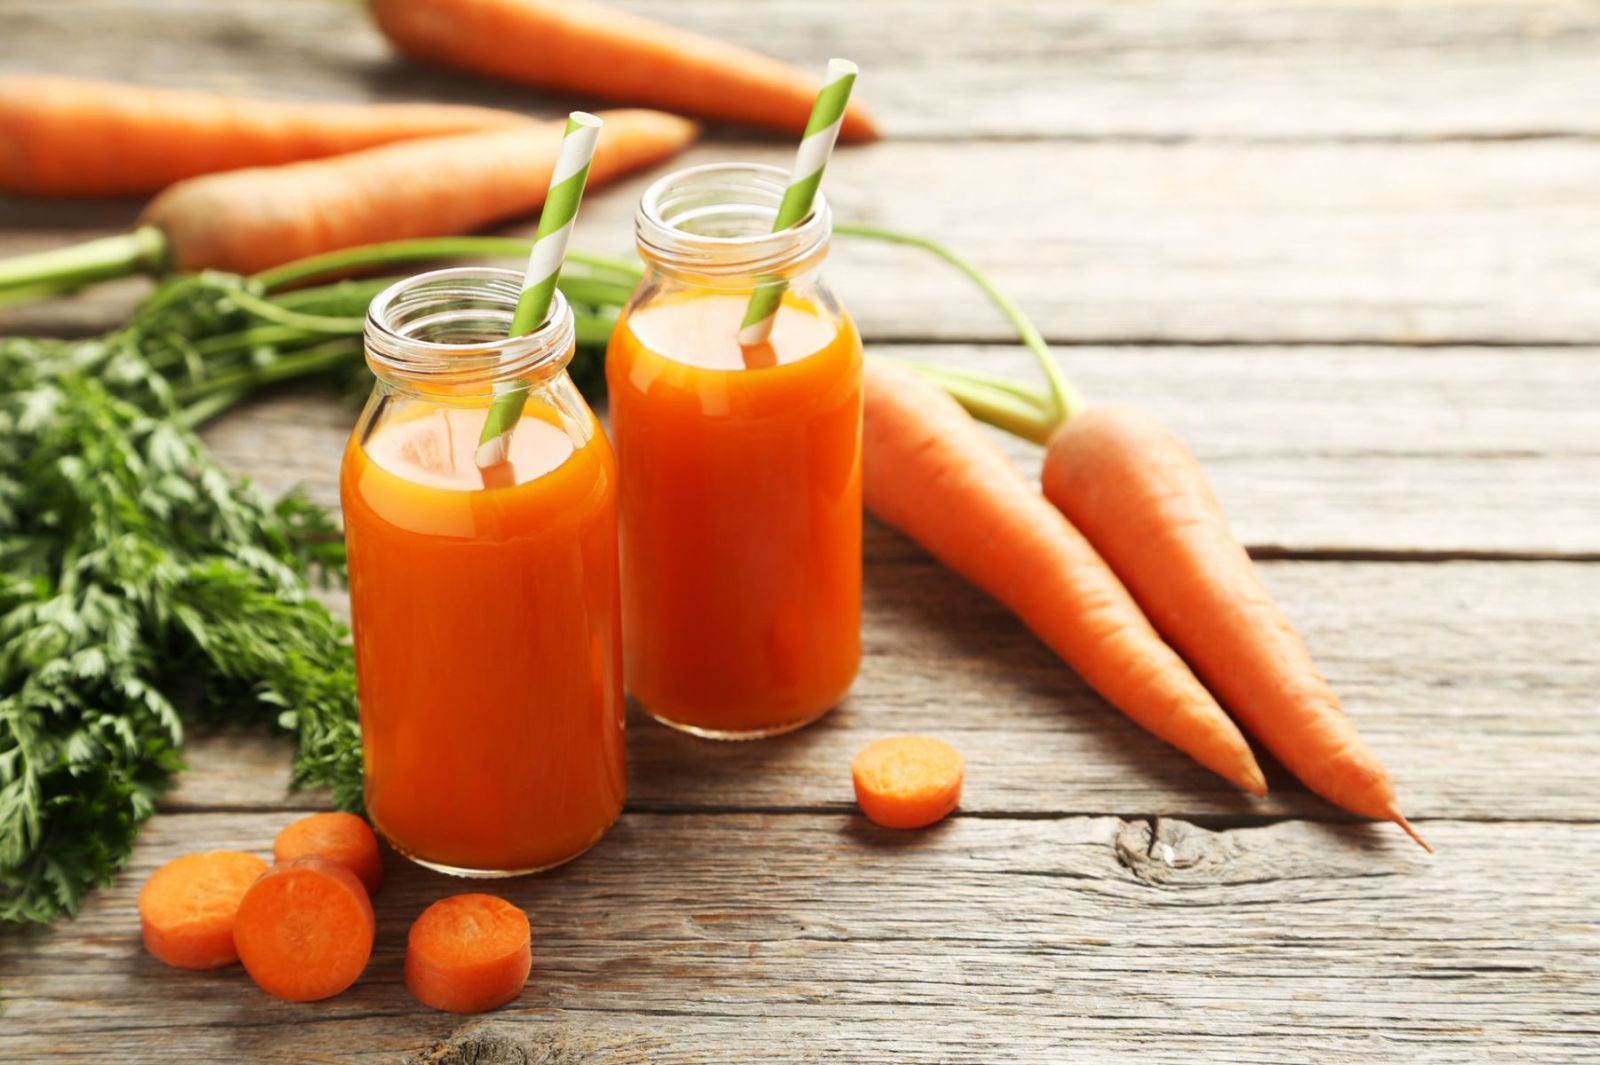 Cà rốt là loại rau củ có thể cung cấp rất nhiều chất dinh dưỡng cần thiết cho cơ thể